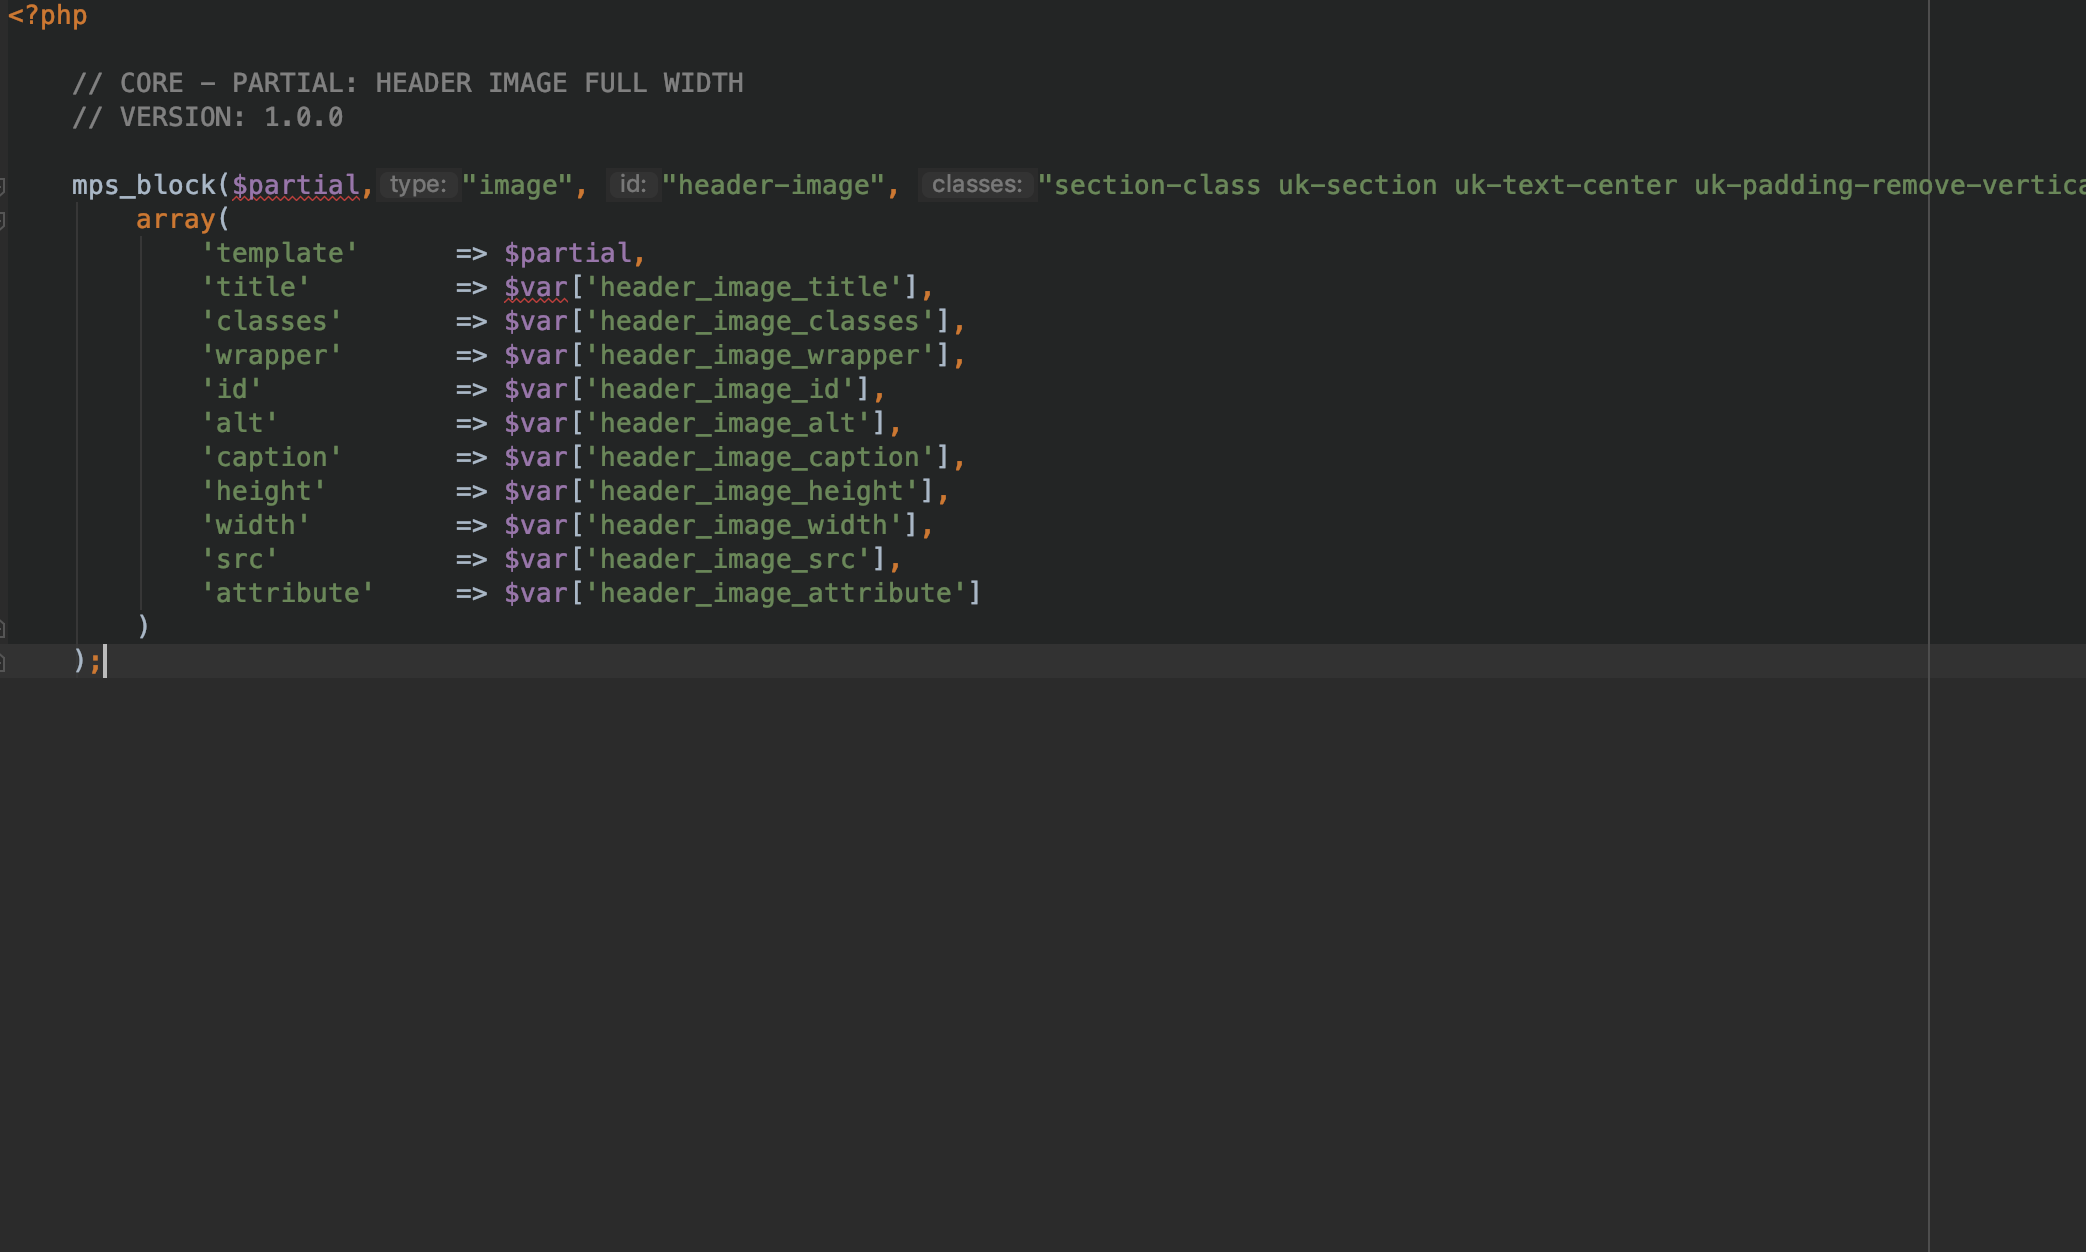 Code view (in PhpStorm) of core code (Header Image for UIkit 3)